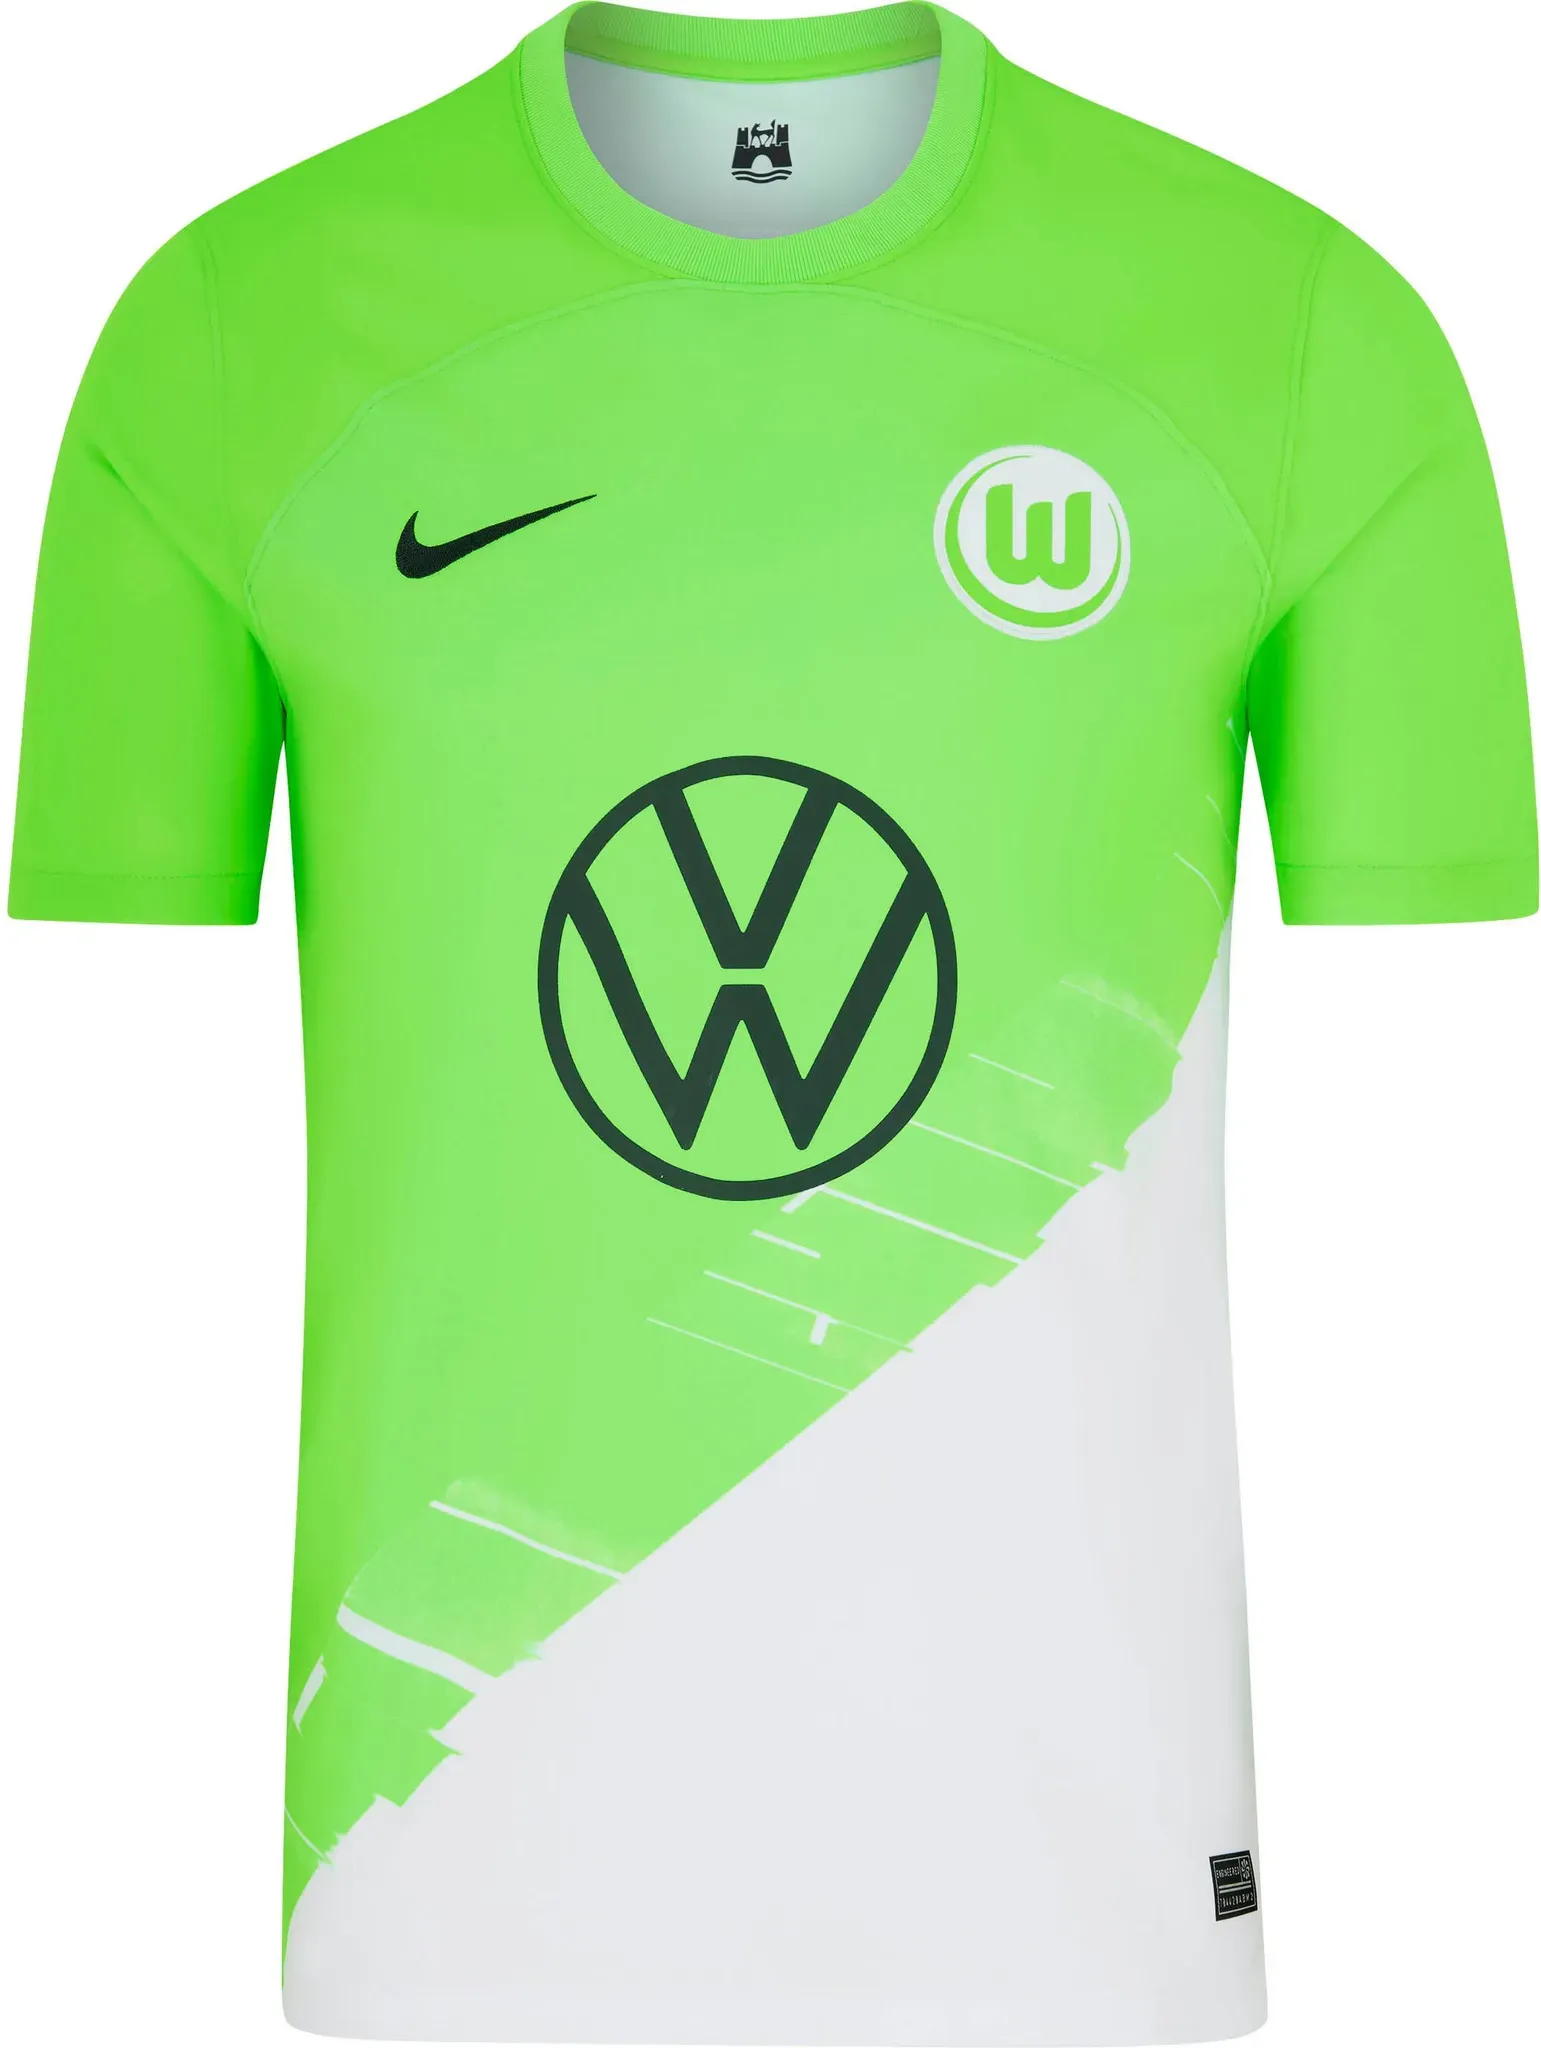 Nike VFL Wolfsburg 23-24 Heim Teamtrikot Herren in sub lime-anthracite, Größe L - grün